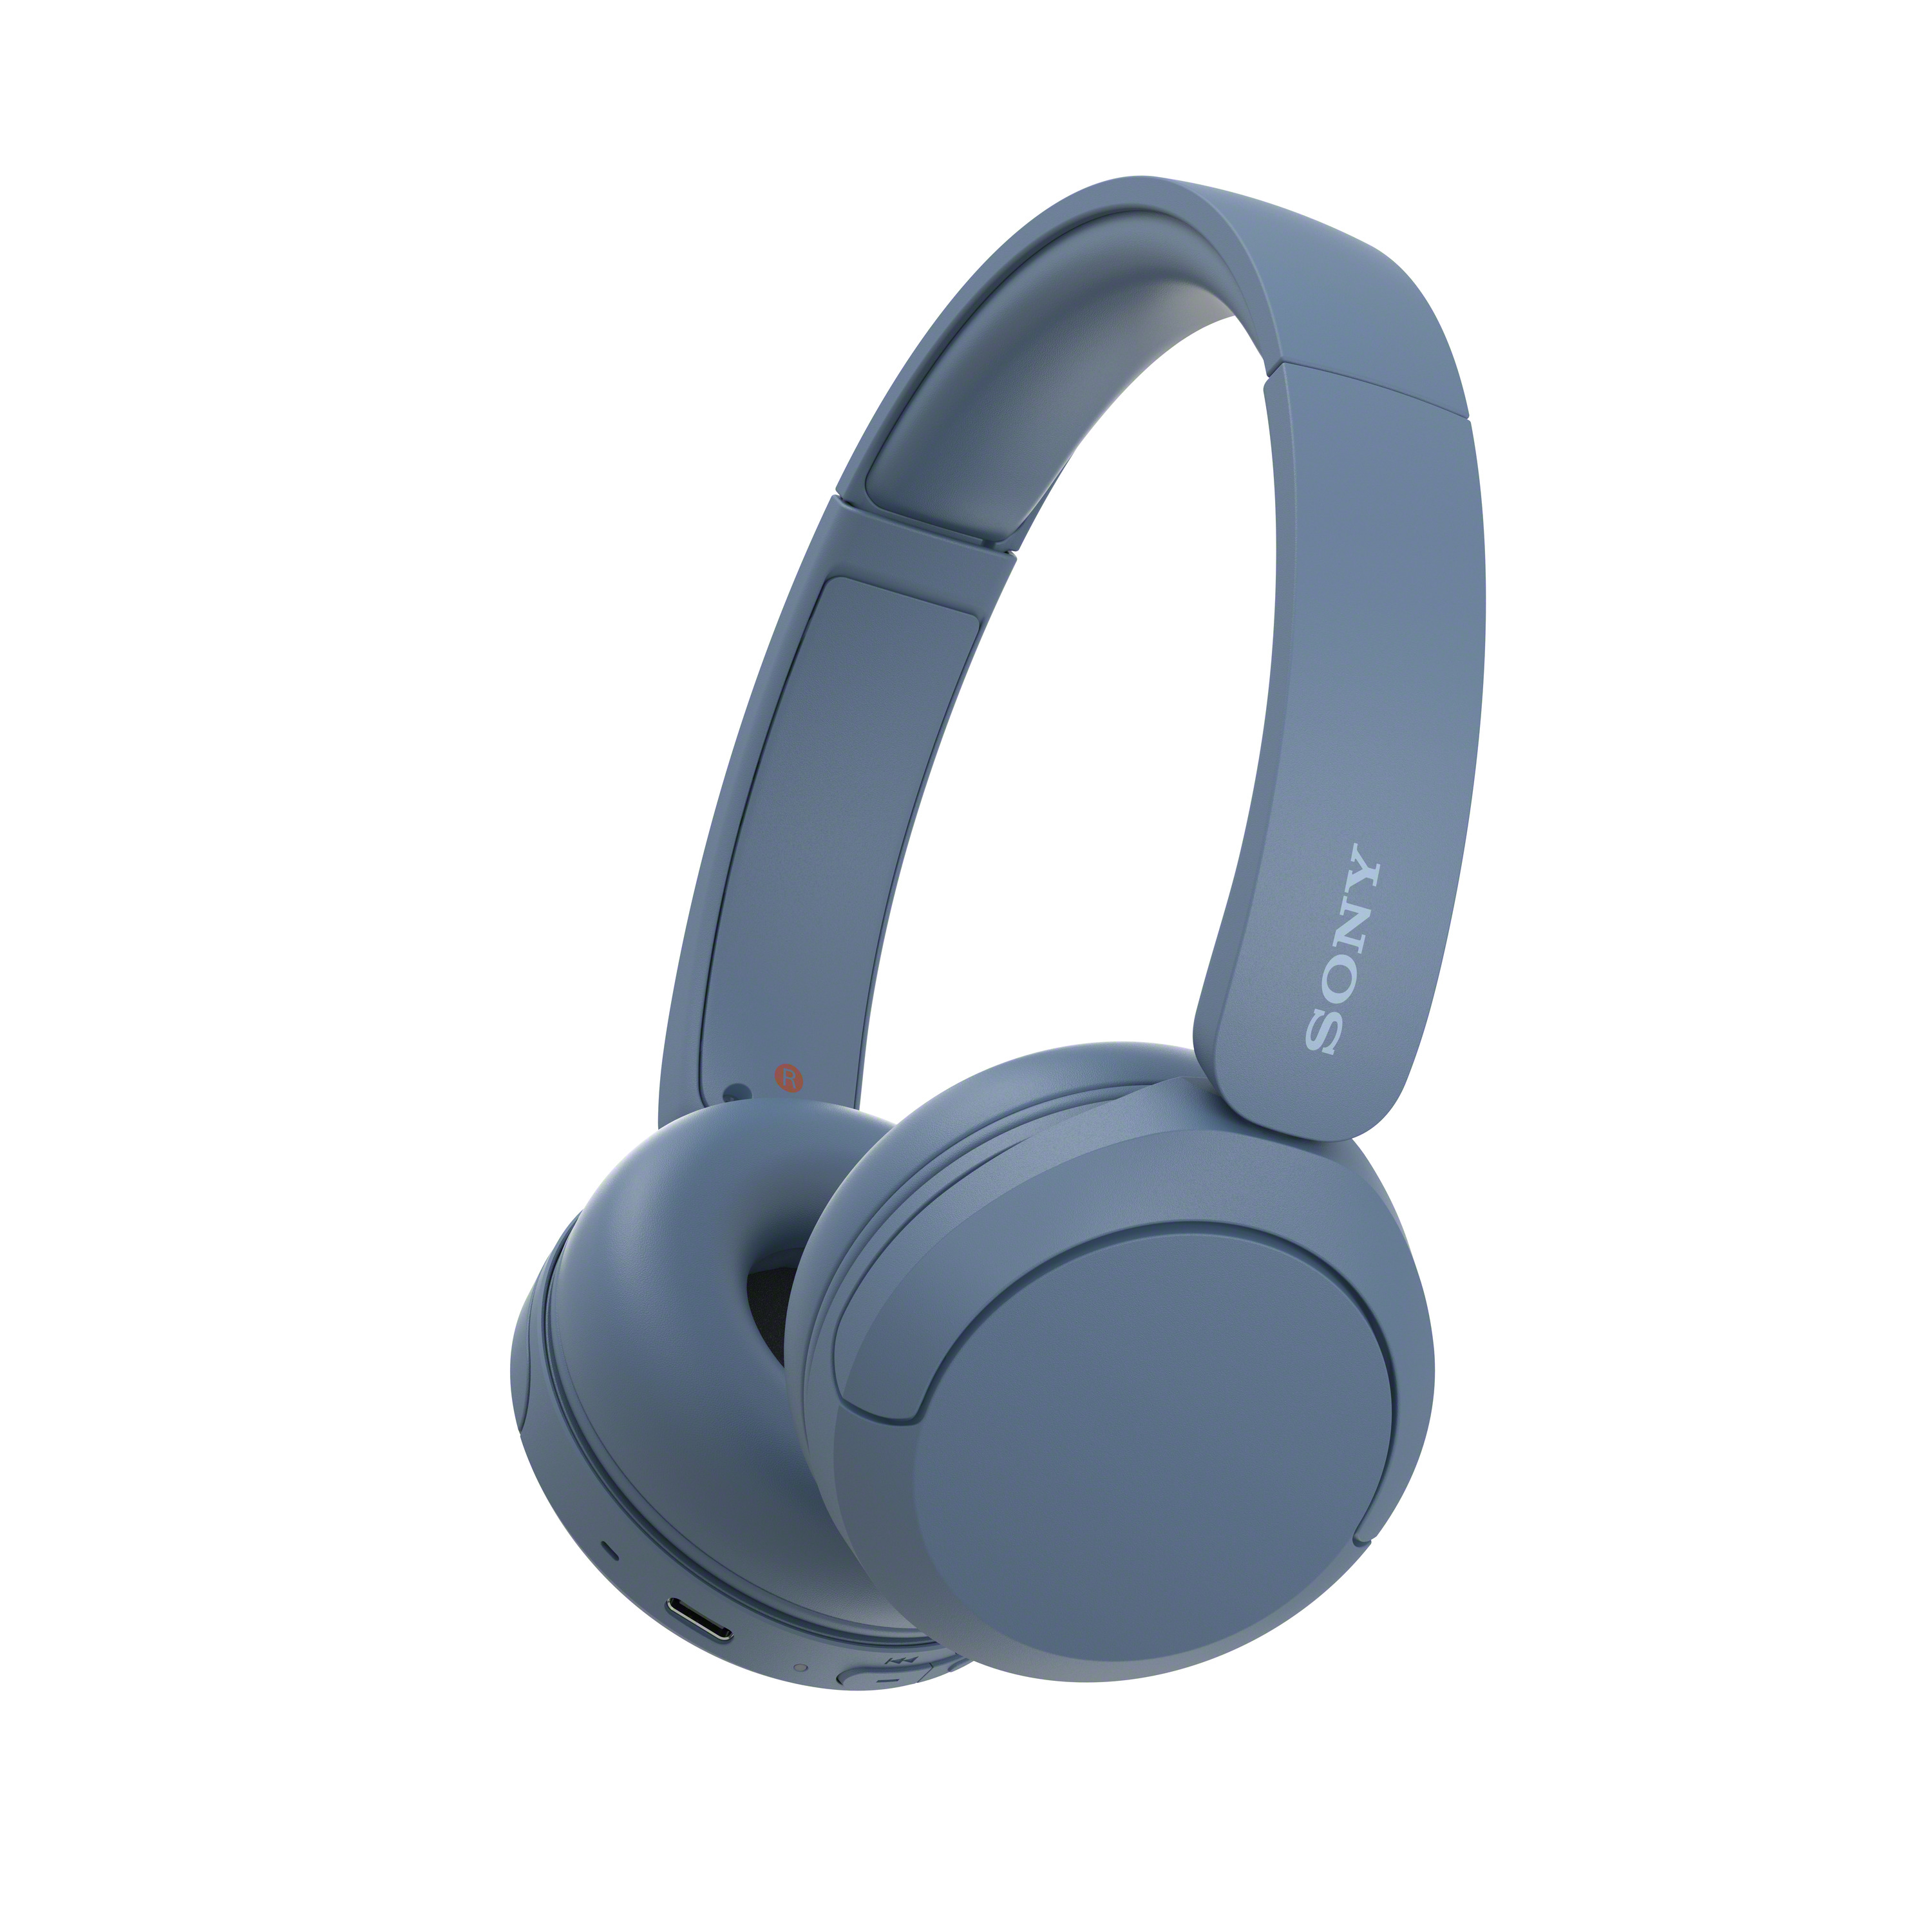 Image of Sony Cuffie Bluetooth wireless WH-CH520 - Durata della batteria fino a 50 ore con ricarica rapida, stile on-ear - Blu